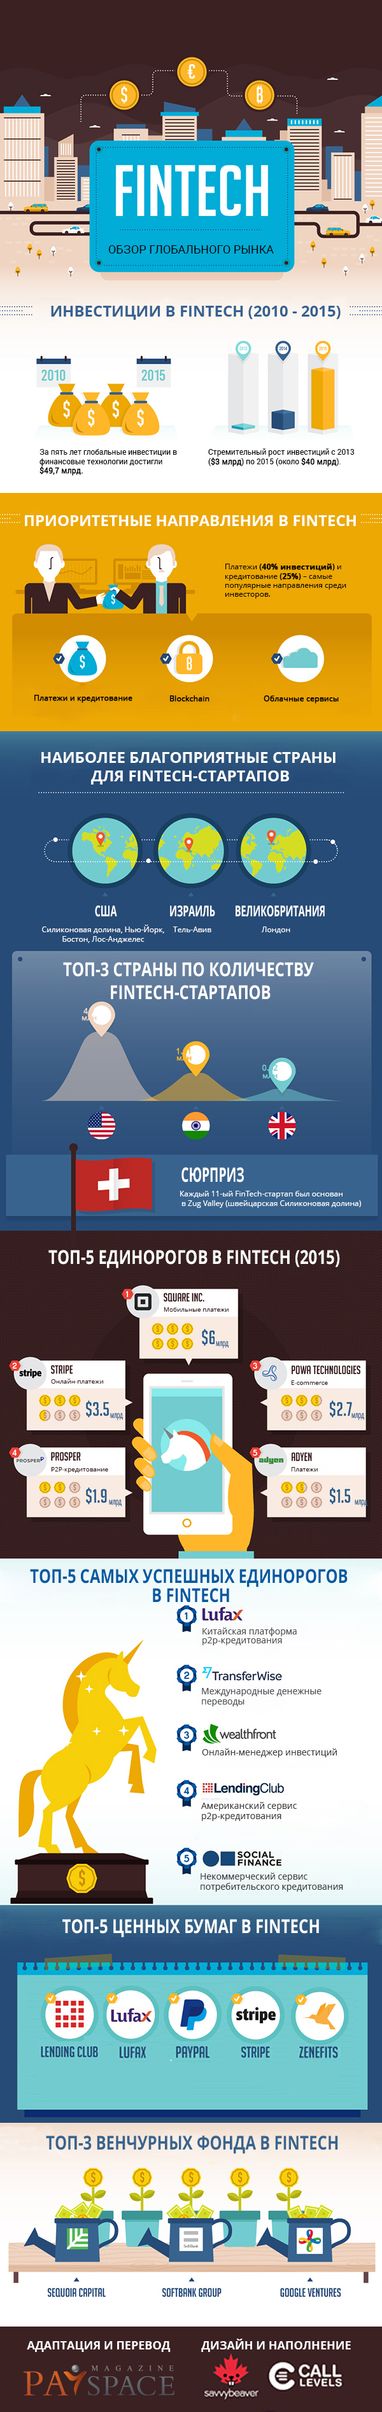 Развитие глобального рынка FinTech (инфографика)